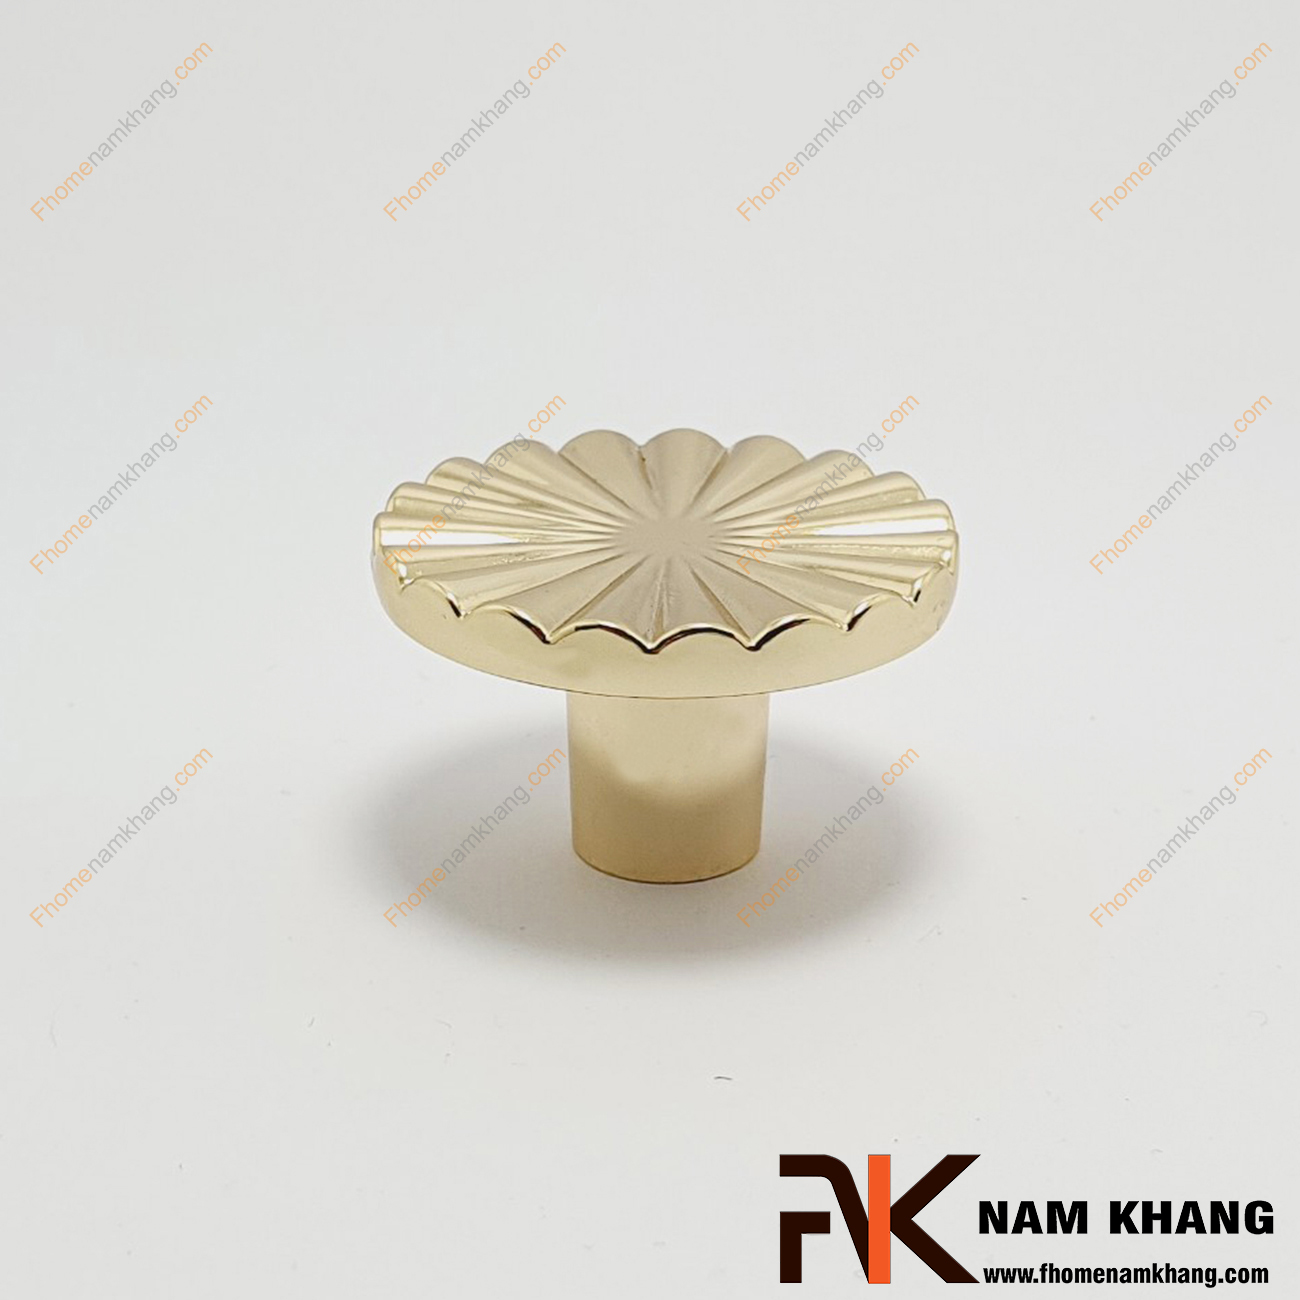 Núm cửa tủ dạng tròn hoa văn quạt đồng tâm vàng bóng NK286Q-V, thiết kế rất đặc trưng và mang đậm vẻ sang trọng cao cấp. 